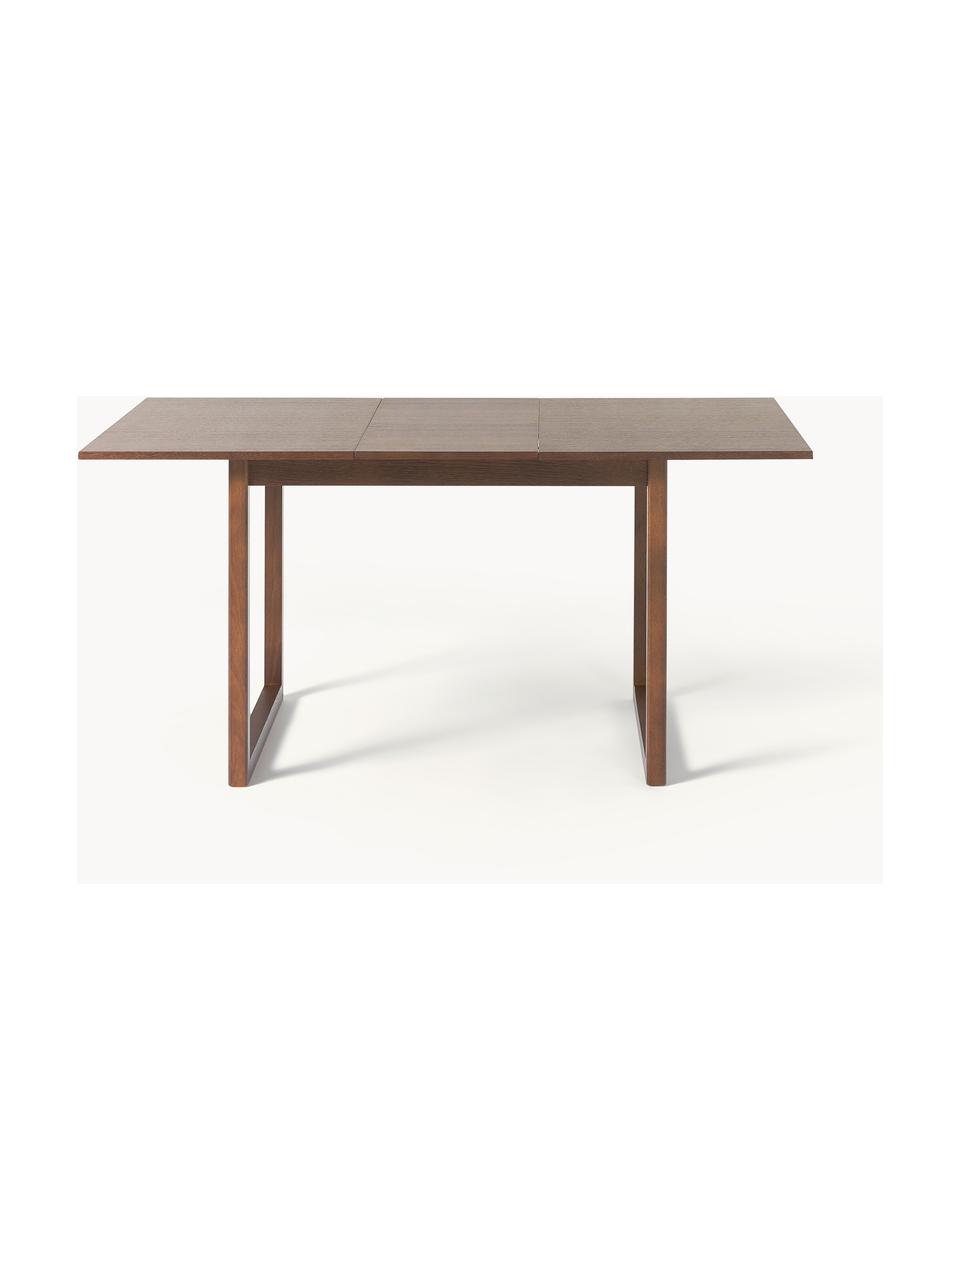 Rozkládací jídelní stůl Calla, různé velikosti, Dubové dřevo, hnědě lakováno, Š 120/160 cm, H 90 cm